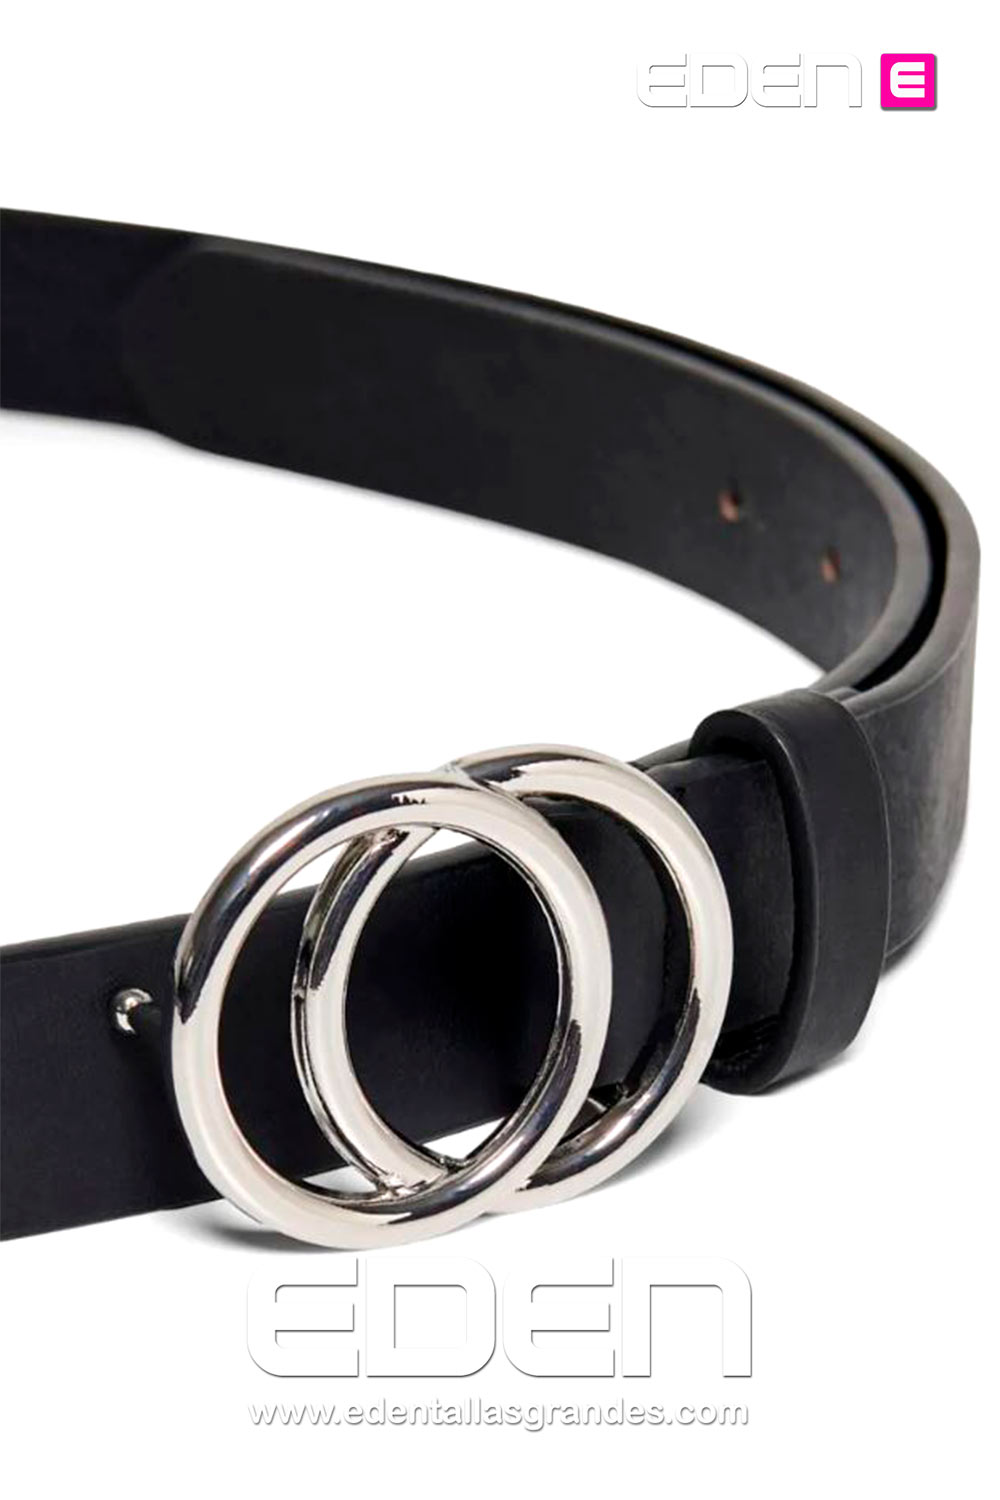 cinturon-anillas-plata-only